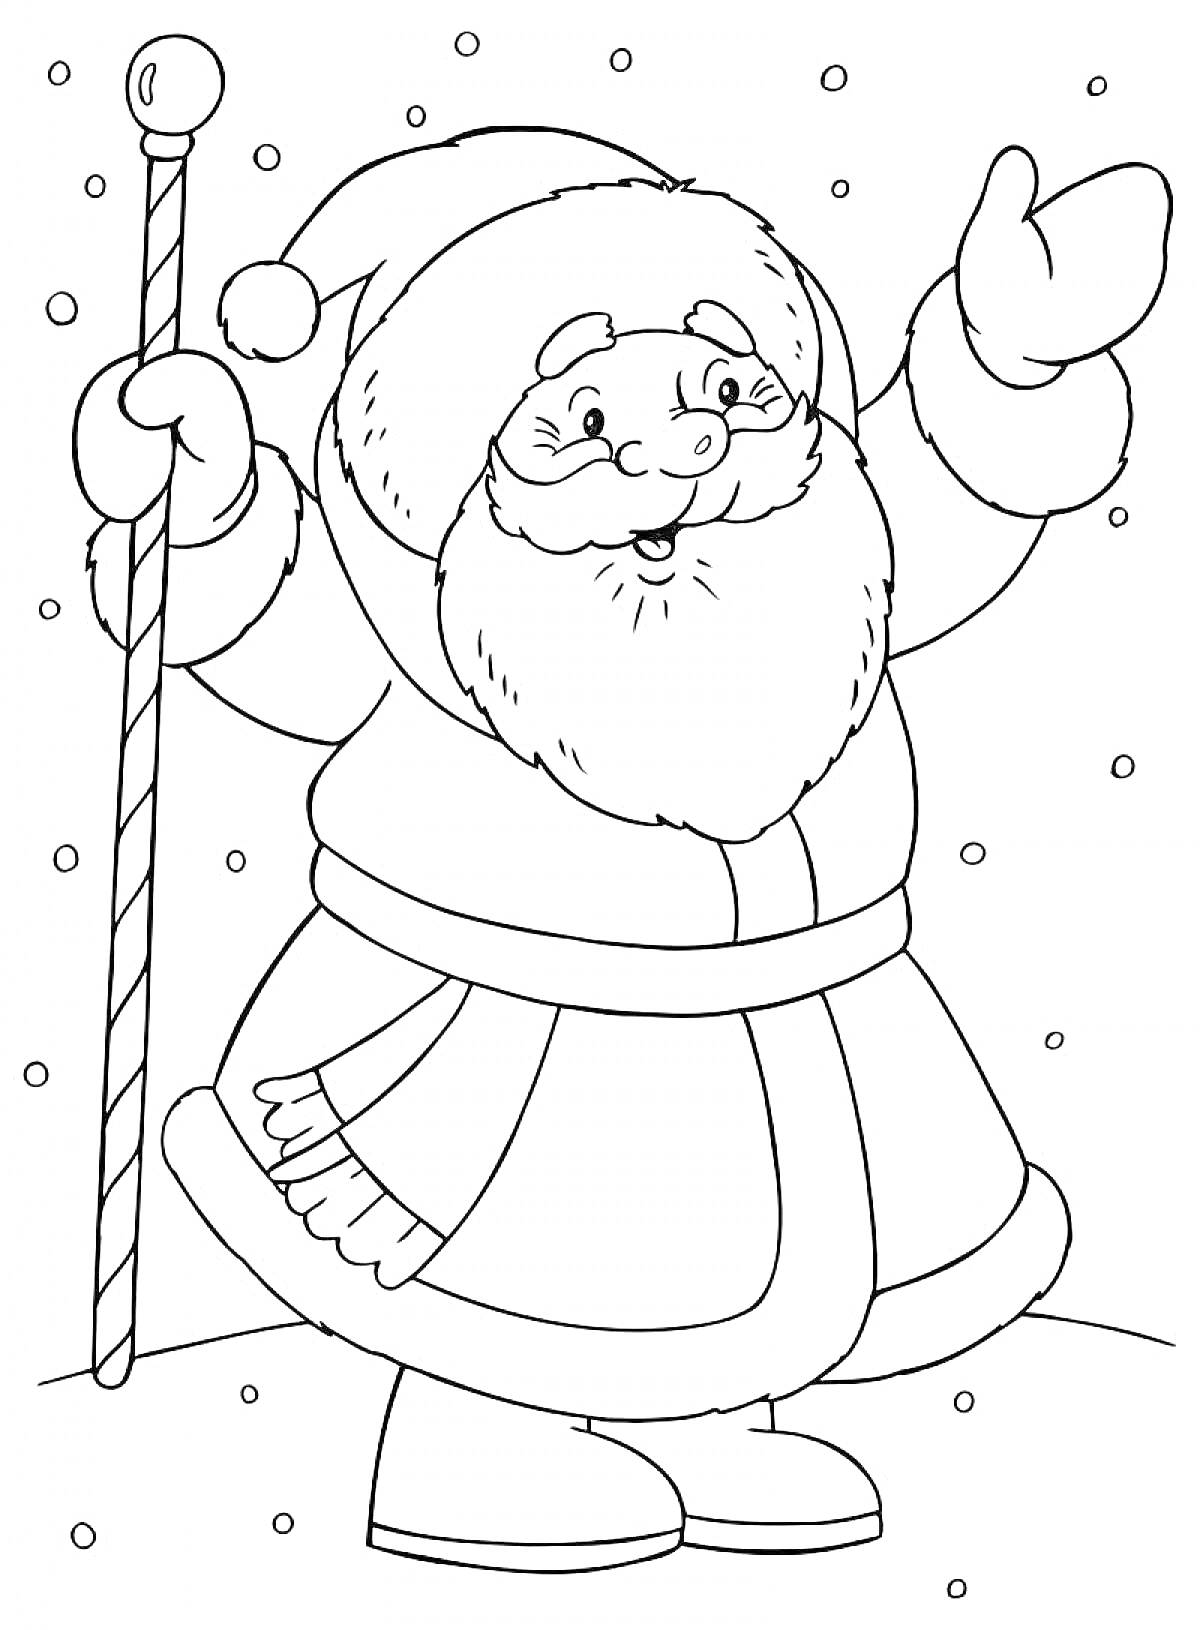 Дед Мороз в шапке с помпоном и посохом в руке, стоящий на снегу